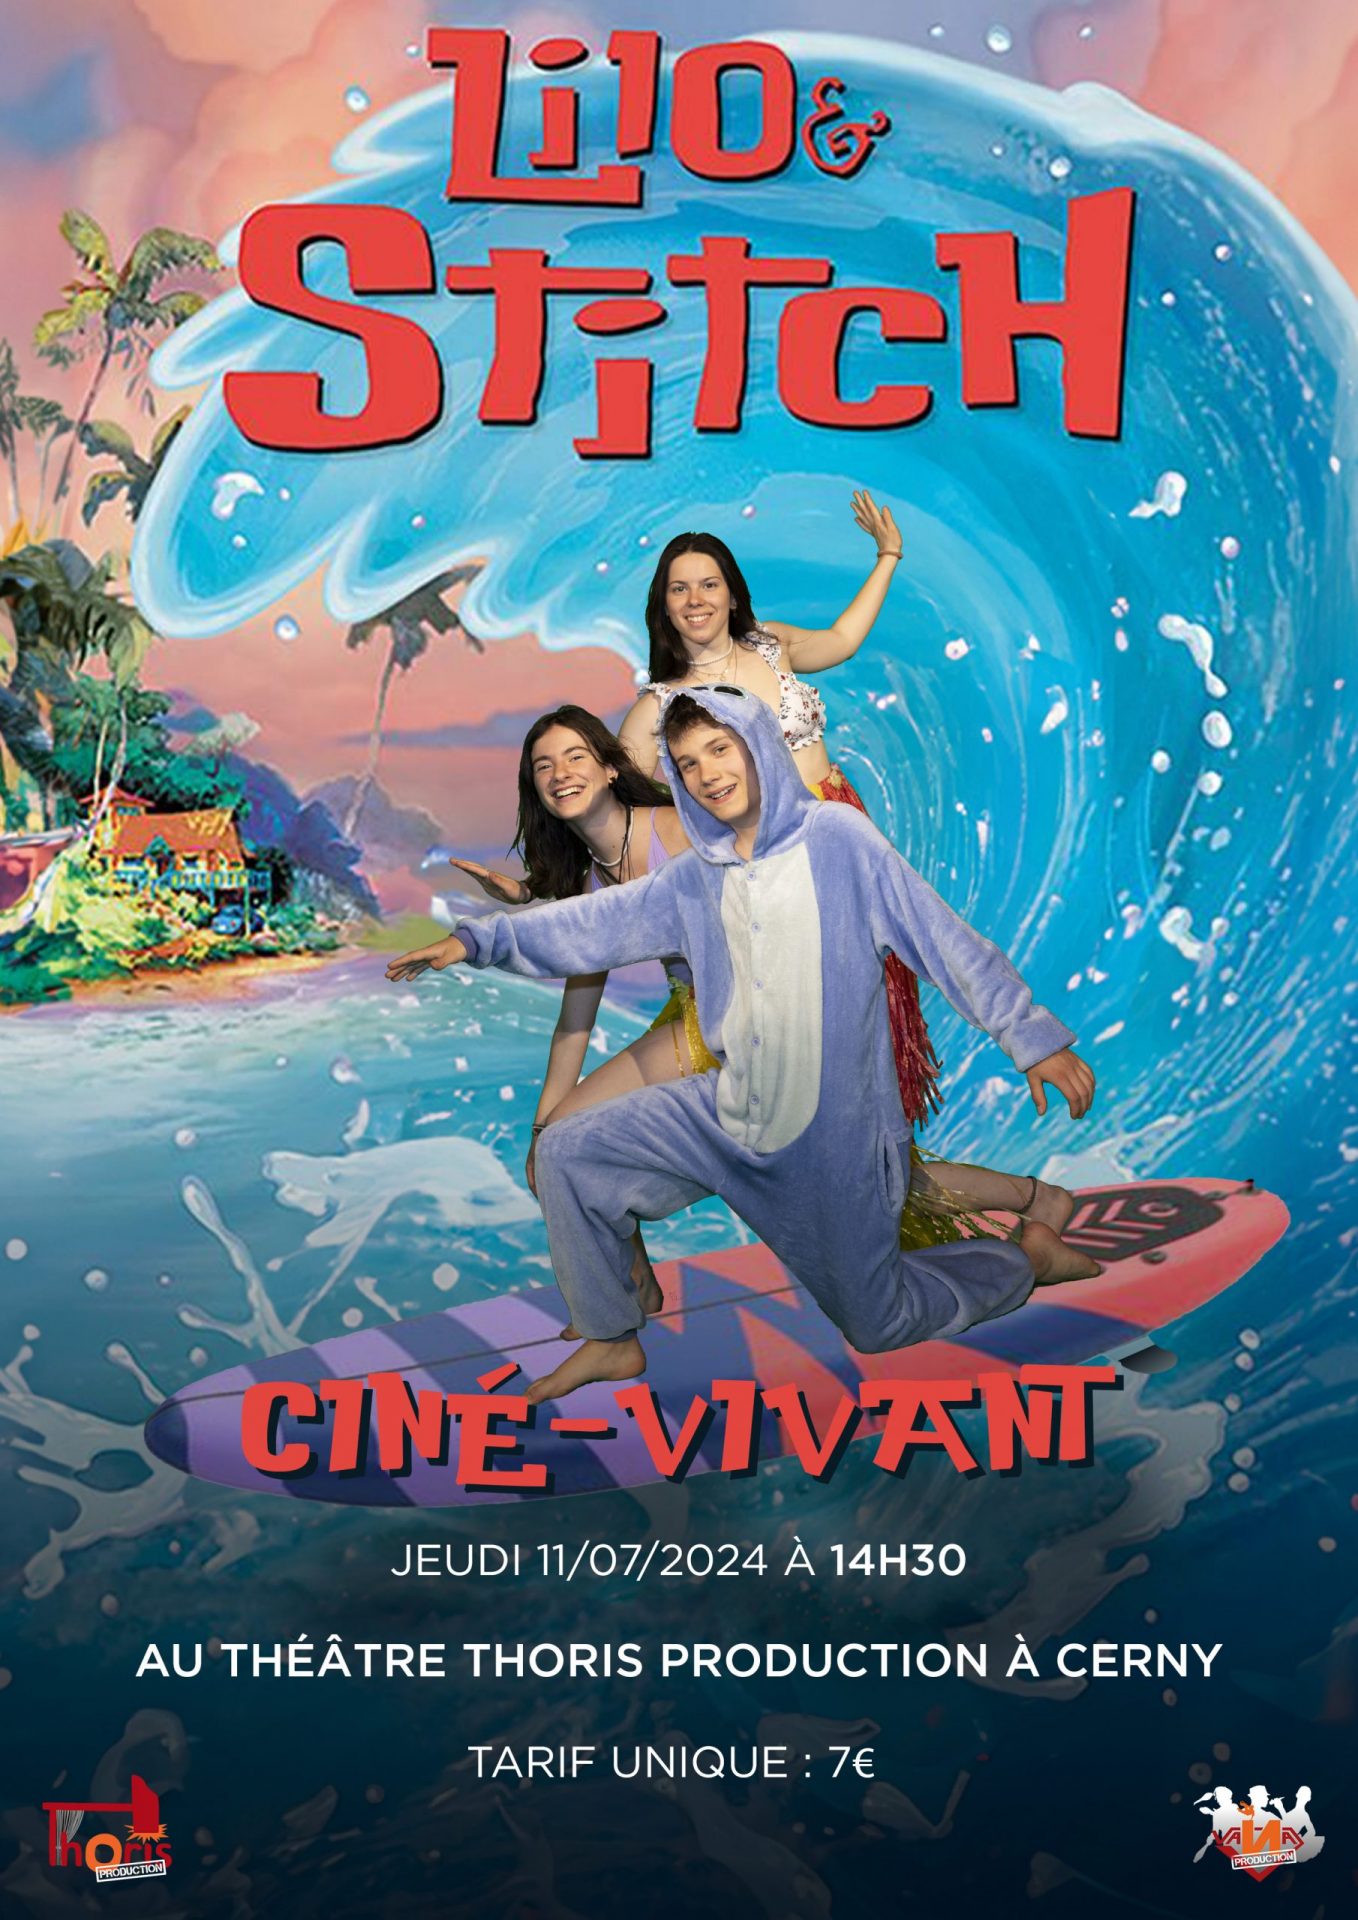 CINÉ-VIVANT : Lilo & Stitch (Jeudi)